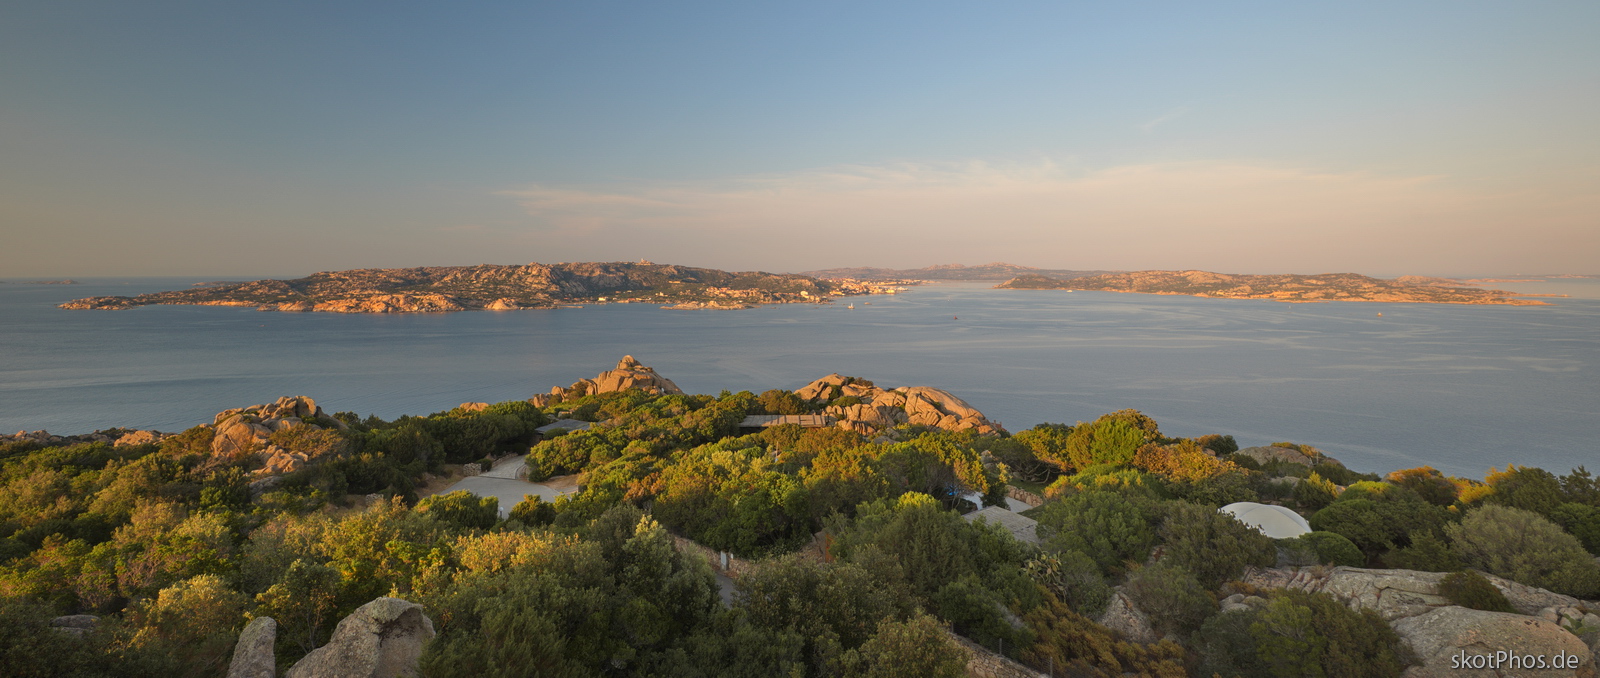 Sardinien - Blick vom Punta Sardegna.